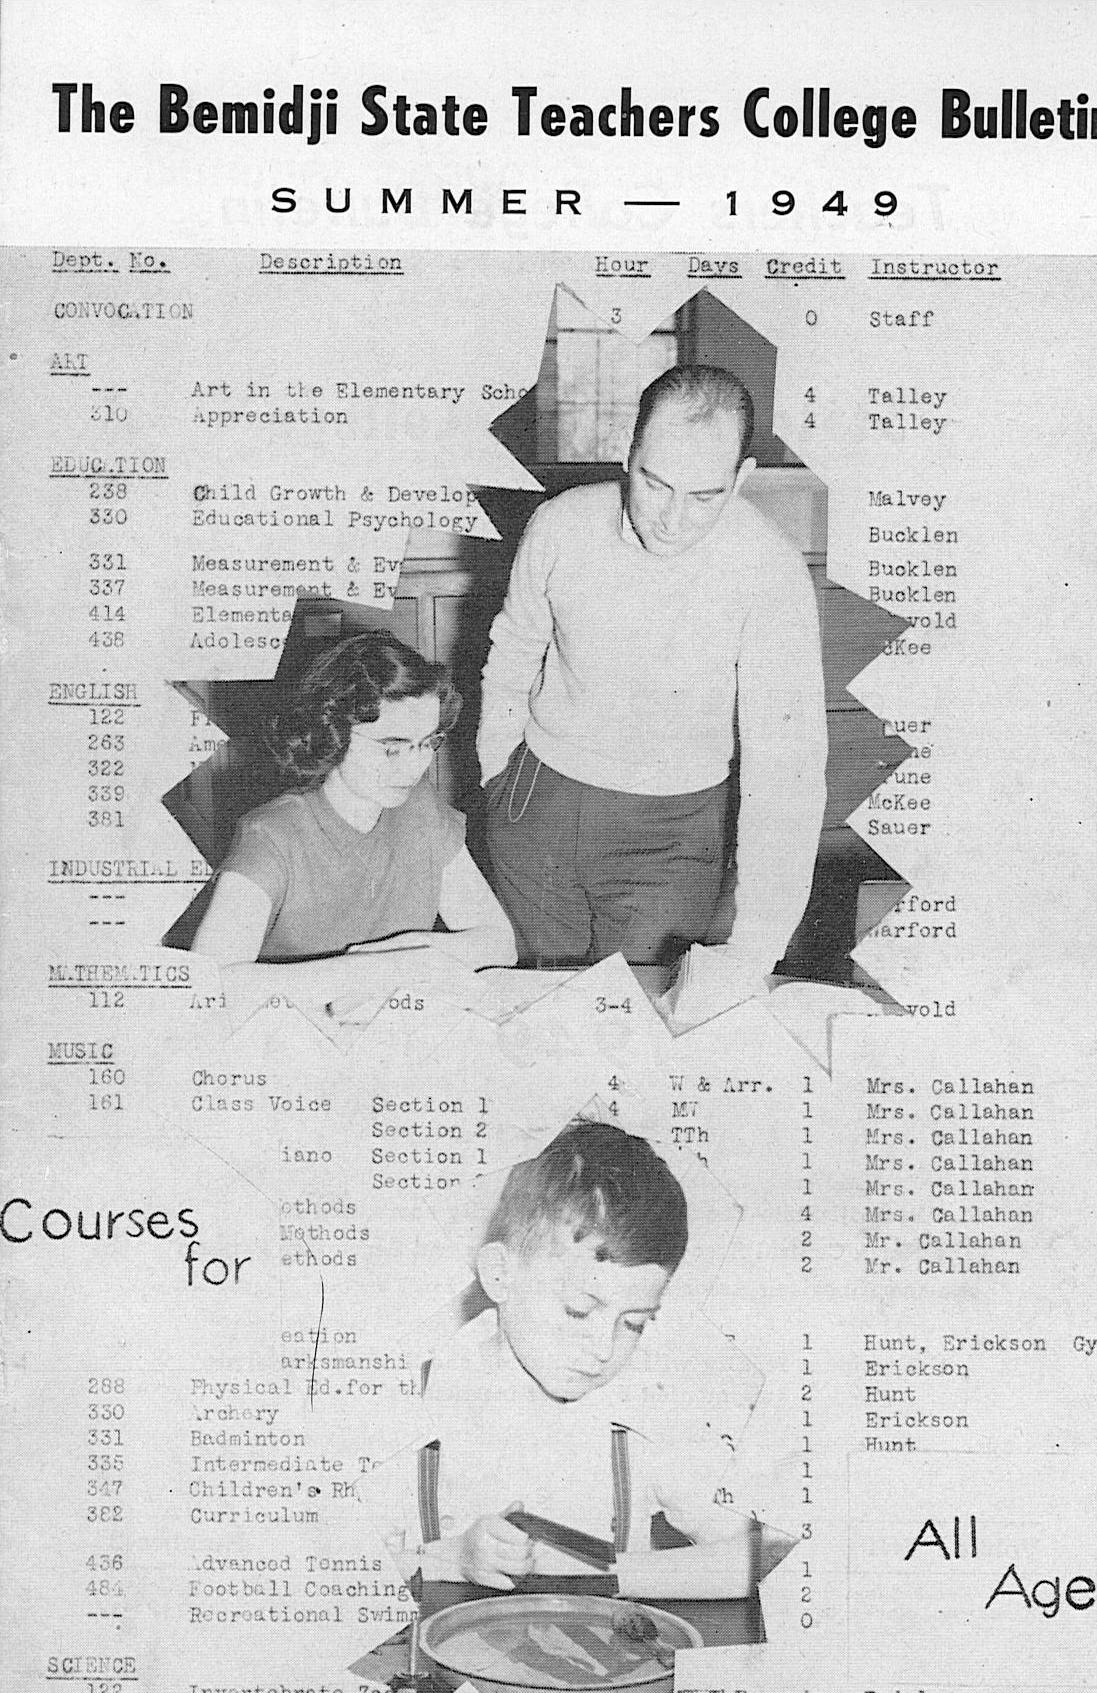 BSTC Summer Bulletin, 1949